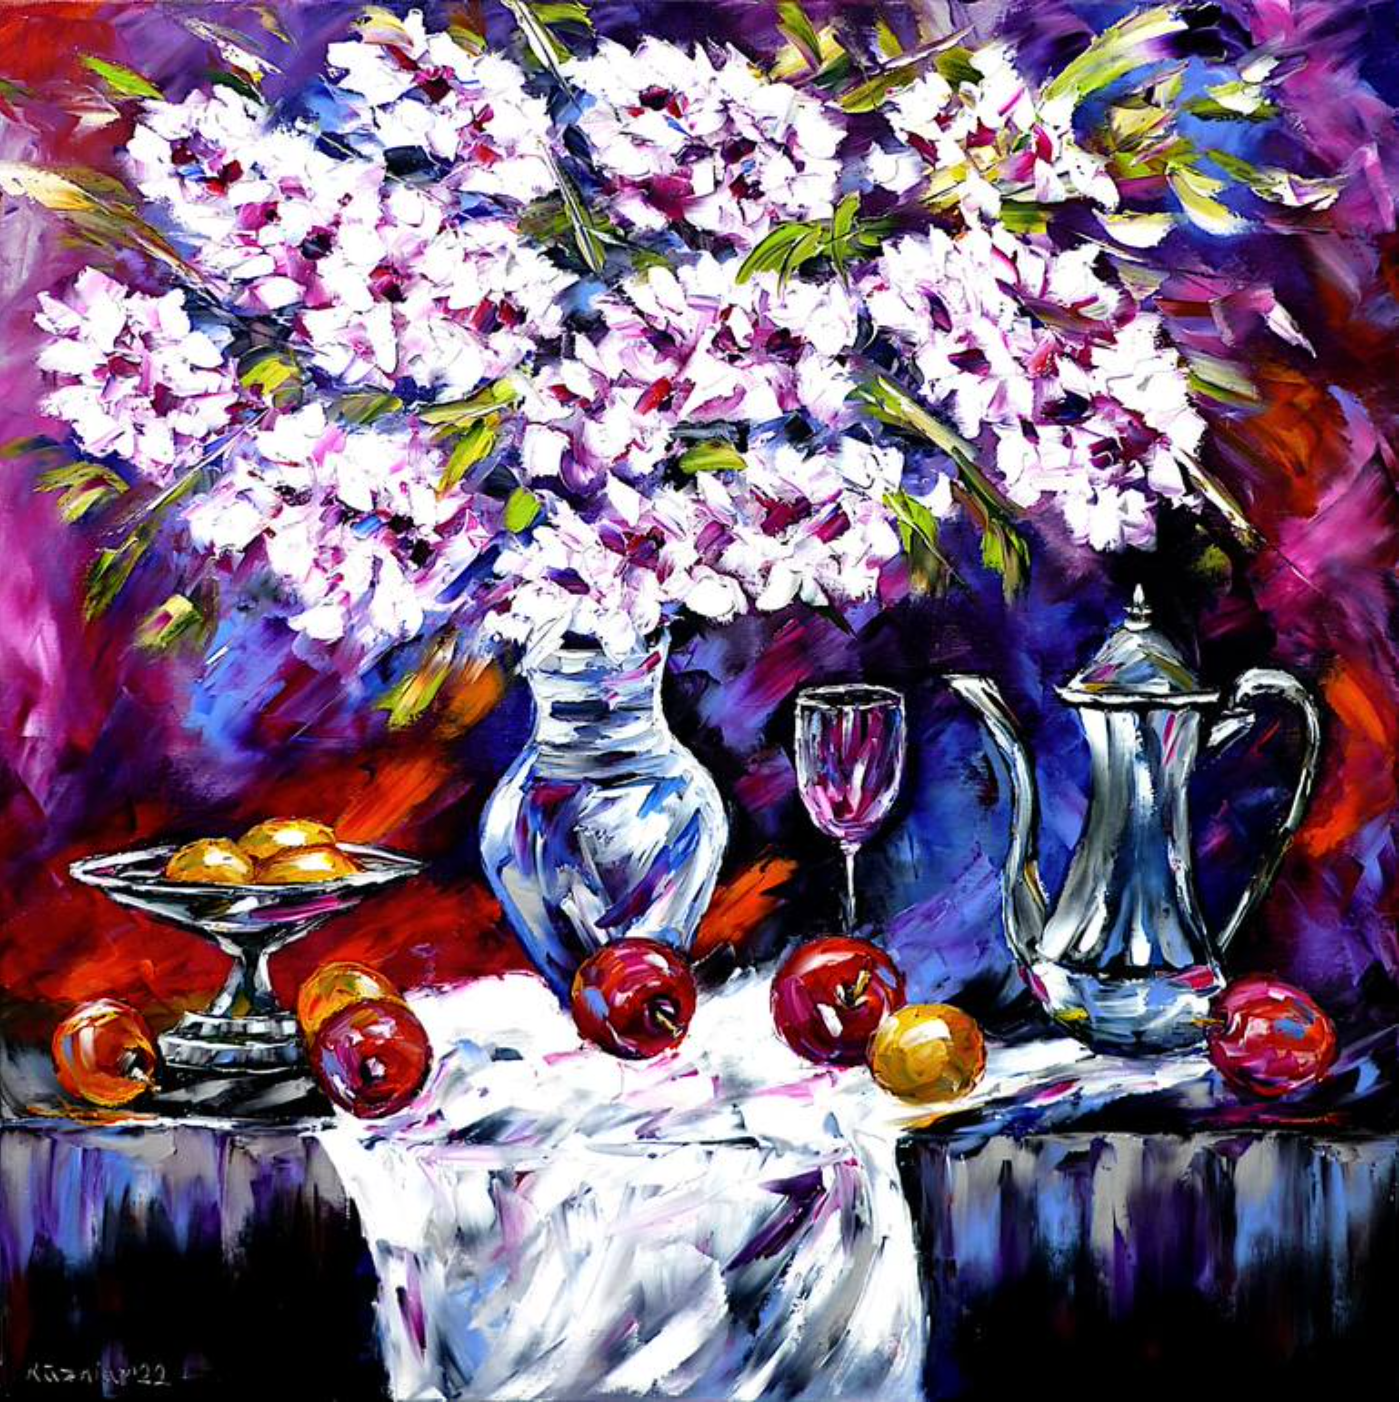 Mirek Kuzinar Pintura expresionista Naturaleza muerta Ramo de flores Cerezos blancos en florero de cristal Manzanas y abeto plateado